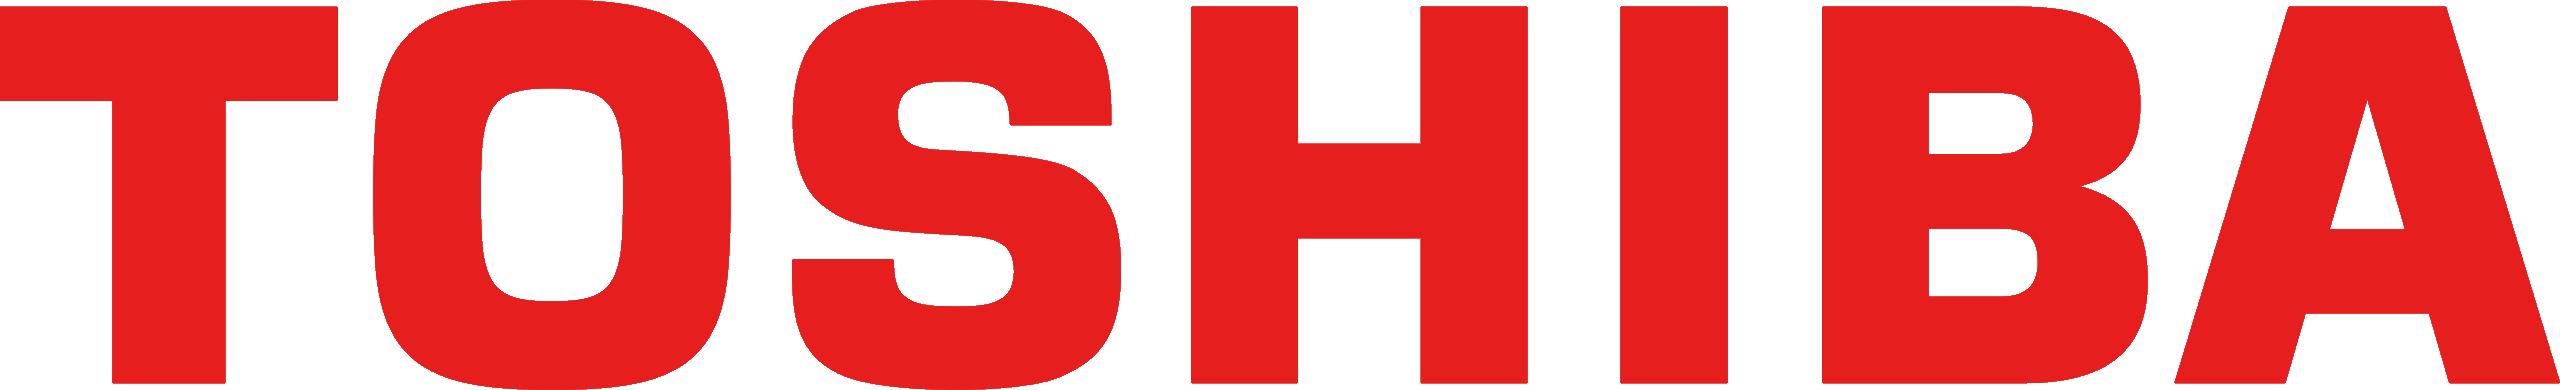 Toshiba_logo.svg